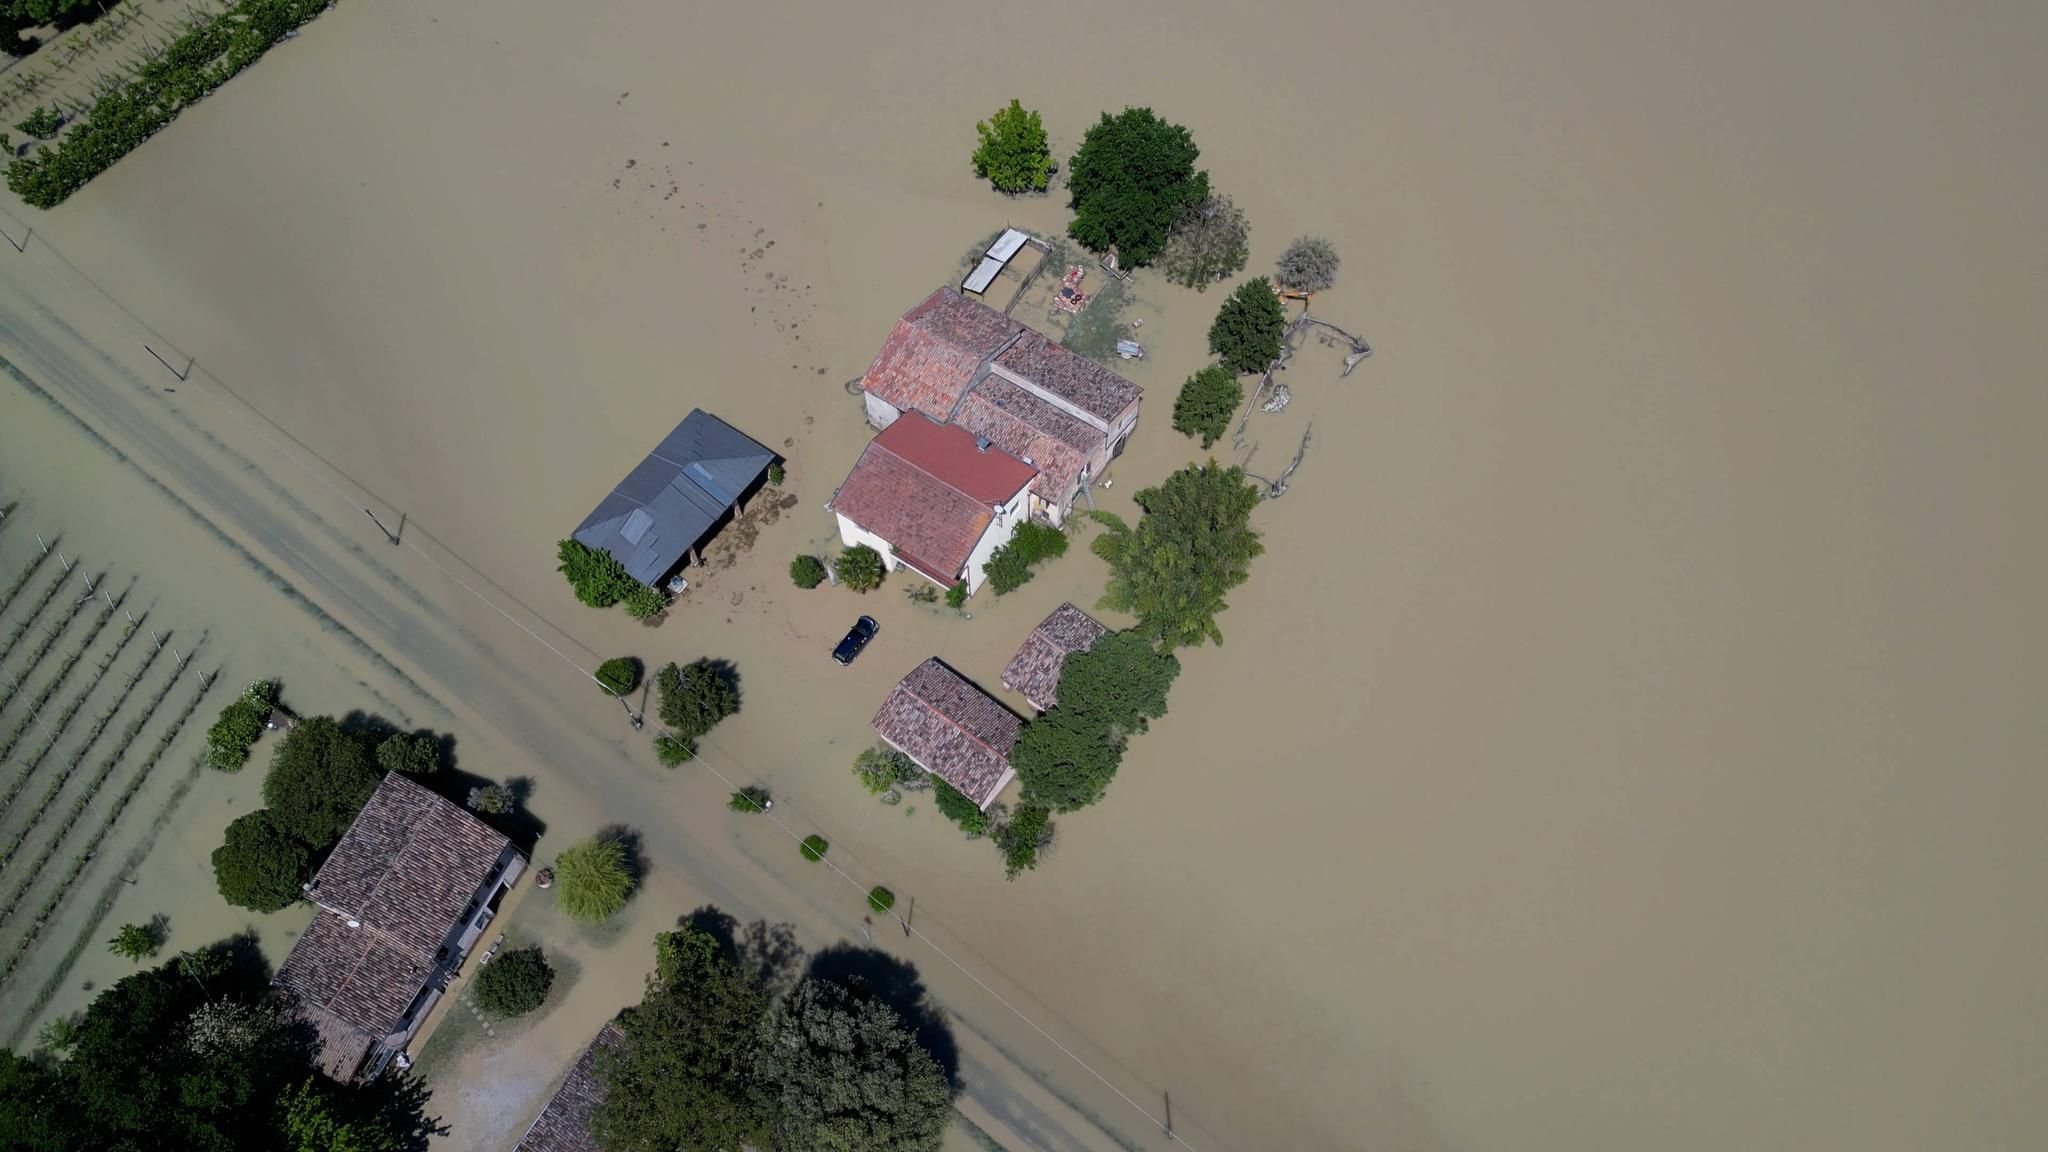 Neresheims Partnerstadt Bagnacavallo von Hochwasser betroffen